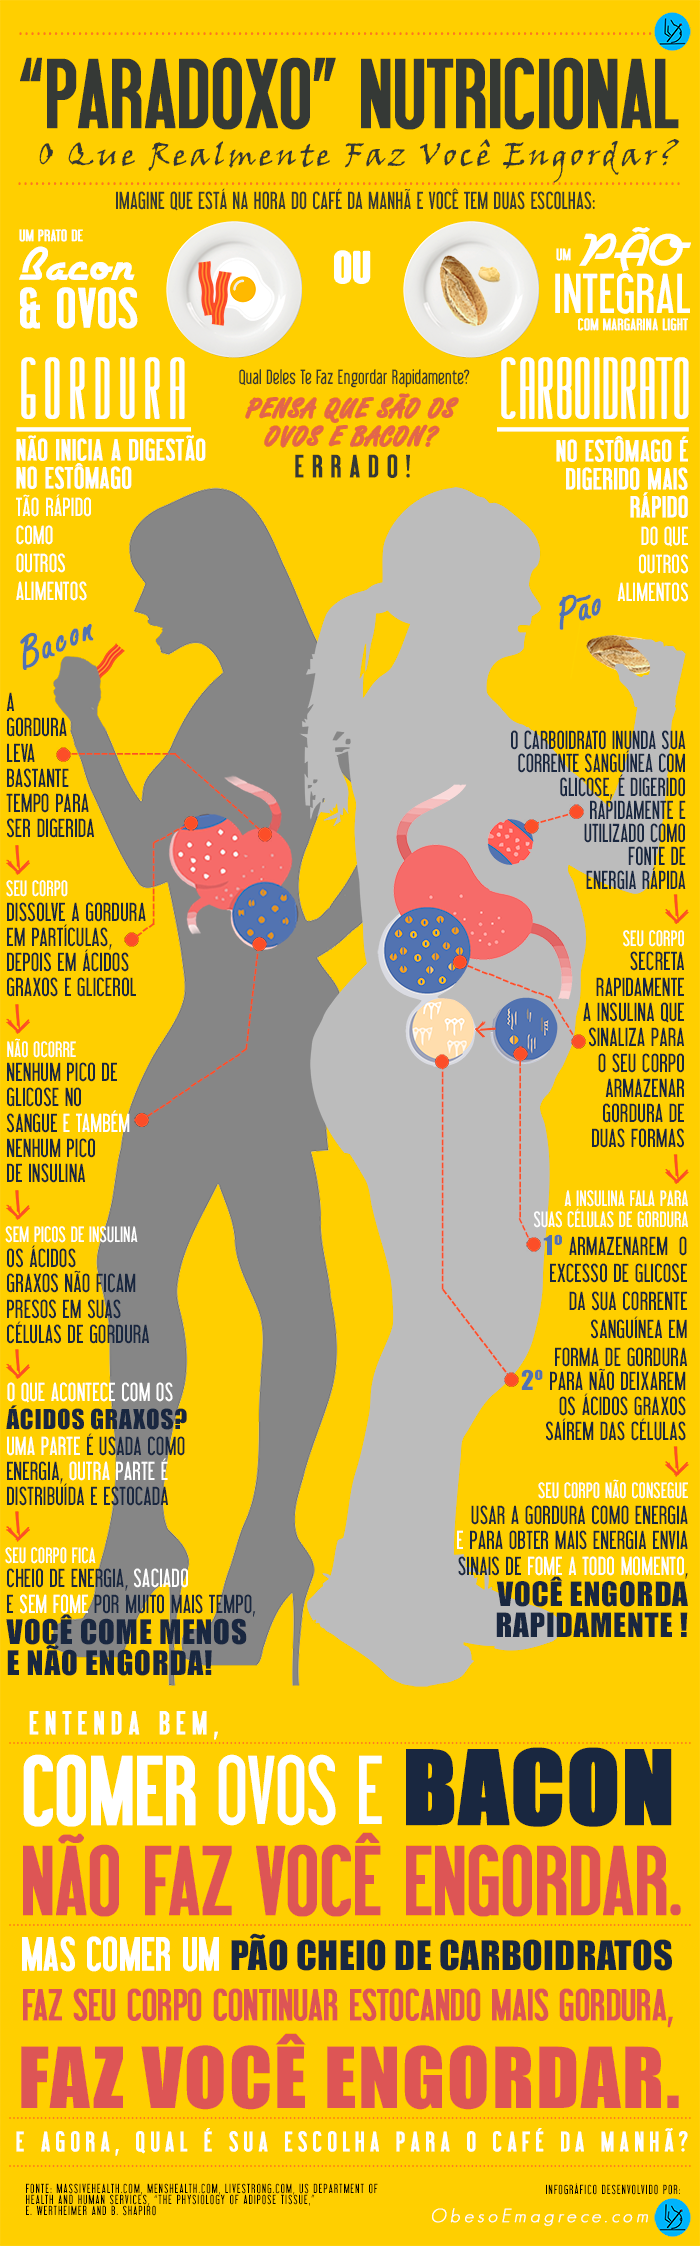 [Infográfico] Paradoxo Nutricional: O Que Realmente Faz Você Engordar?